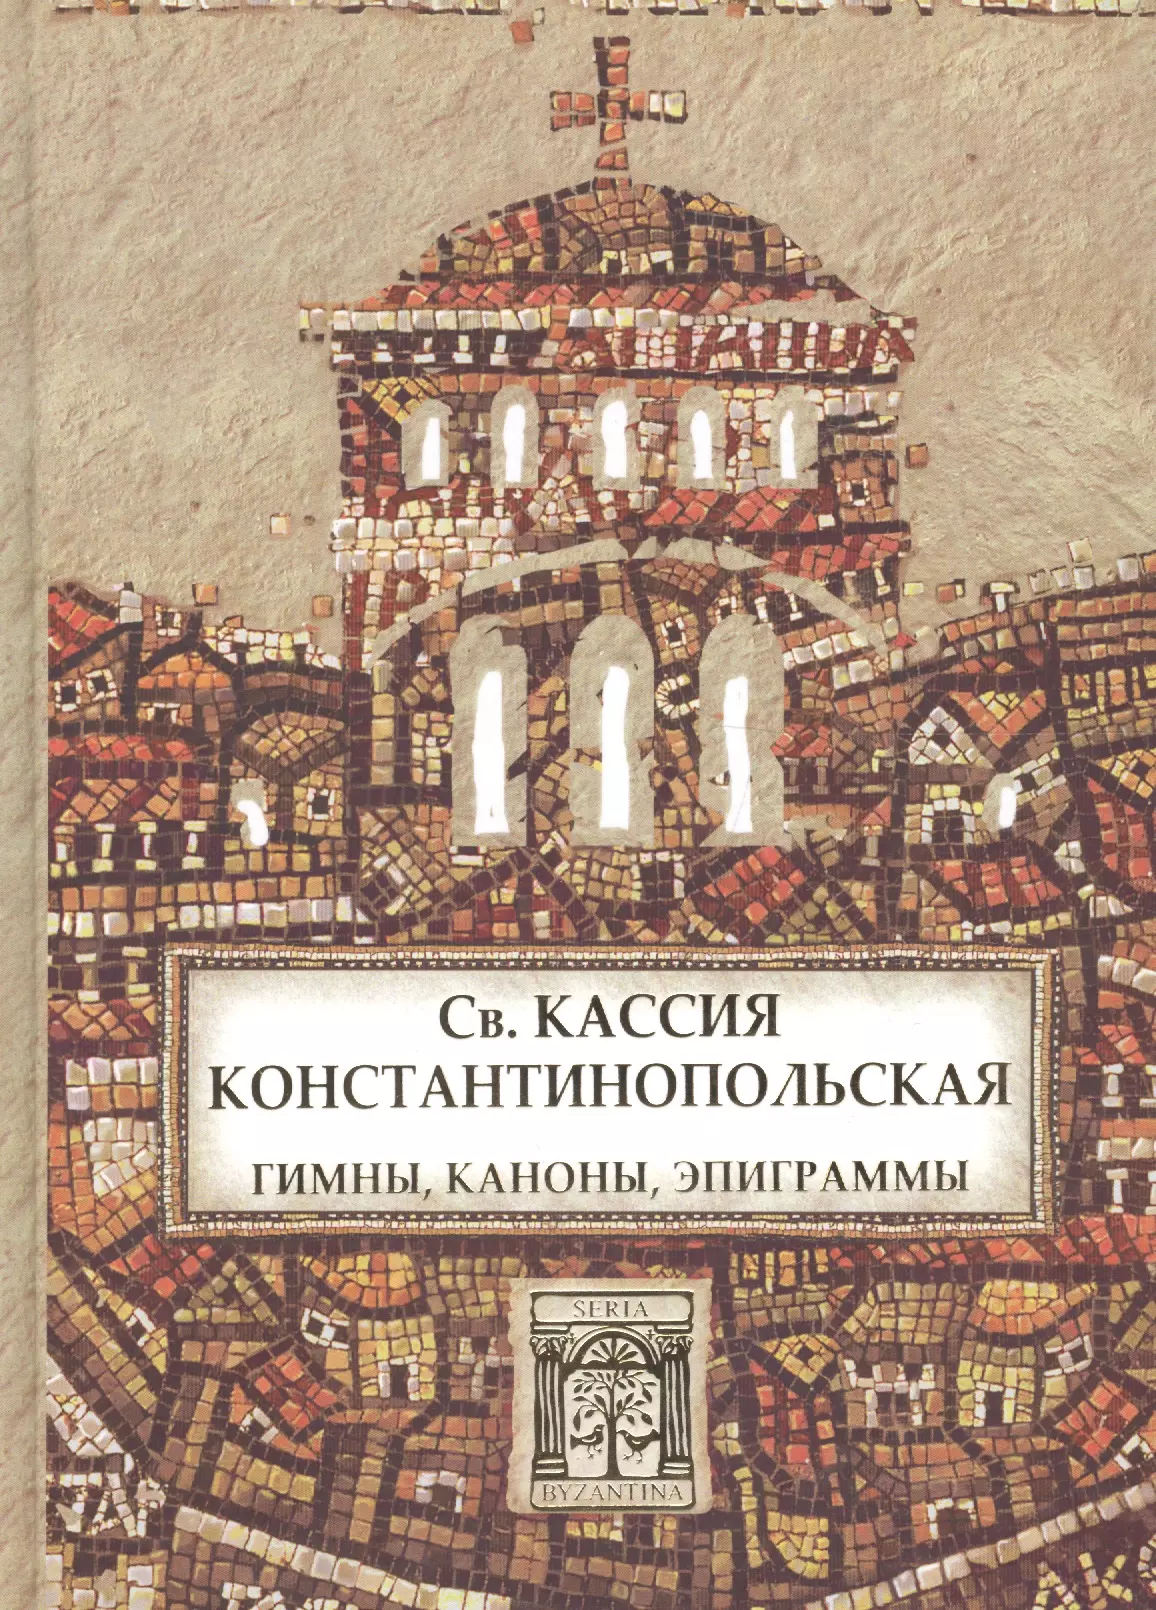 Дель Мирах Кассия - Св. Кассия Константинопольская. Гимны, каноны, эпиграммы.